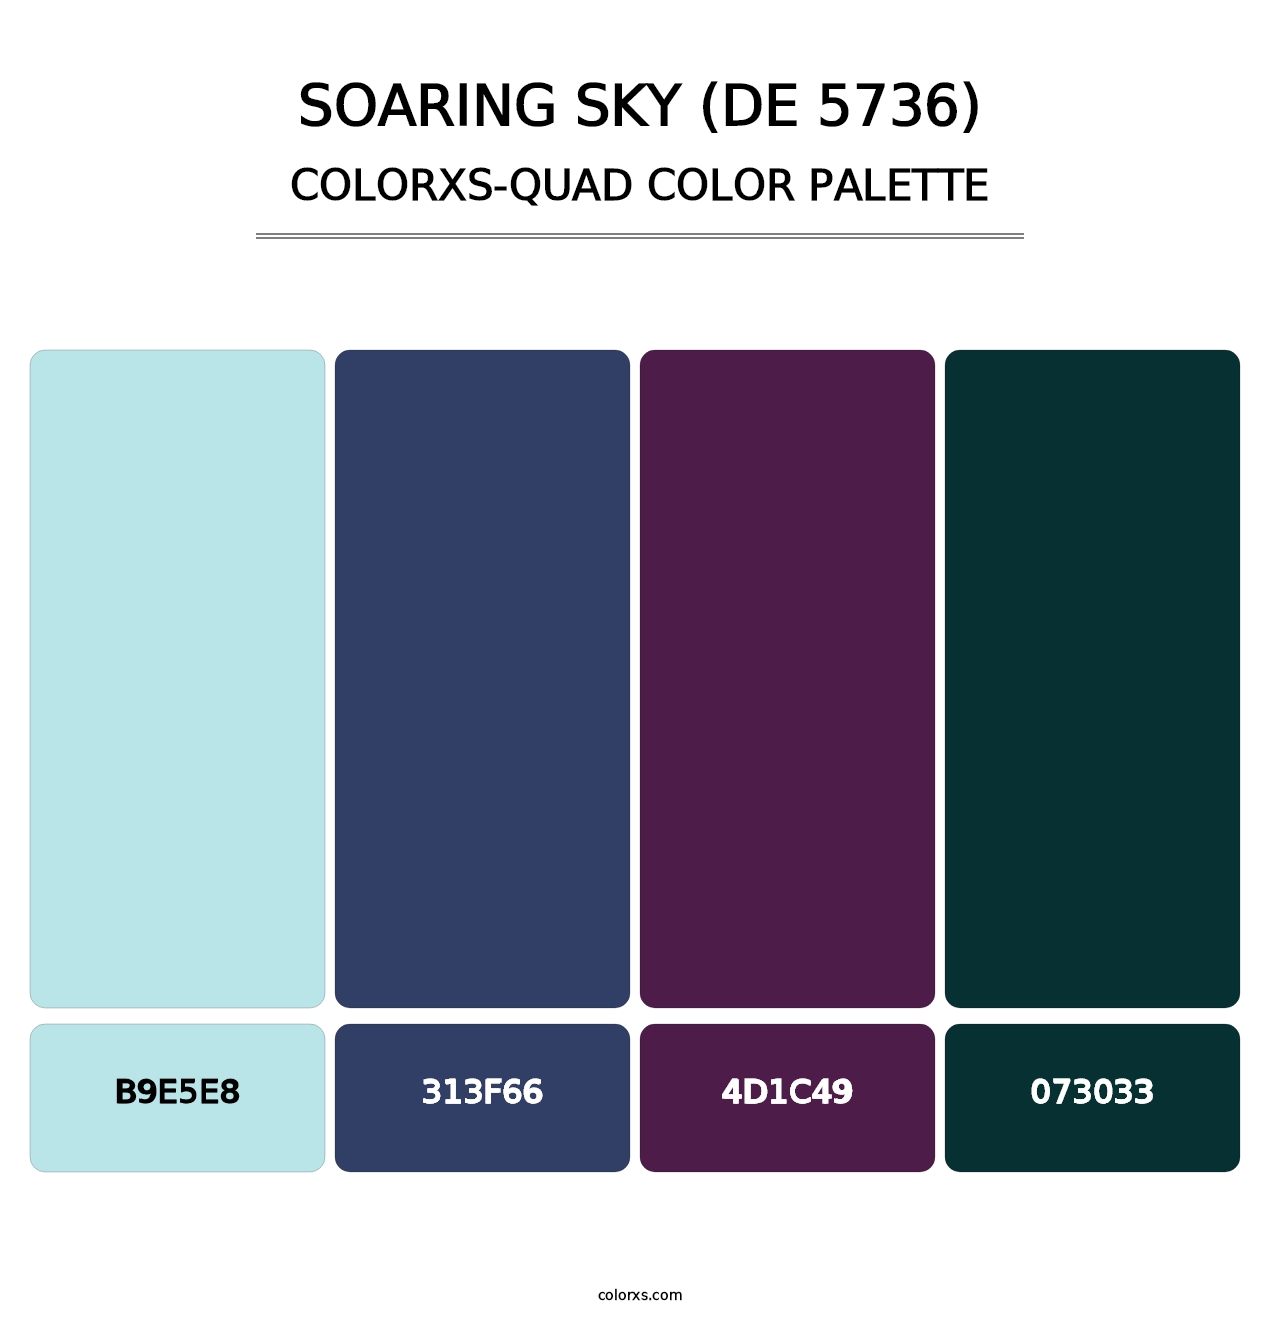 Soaring Sky (DE 5736) - Colorxs Quad Palette